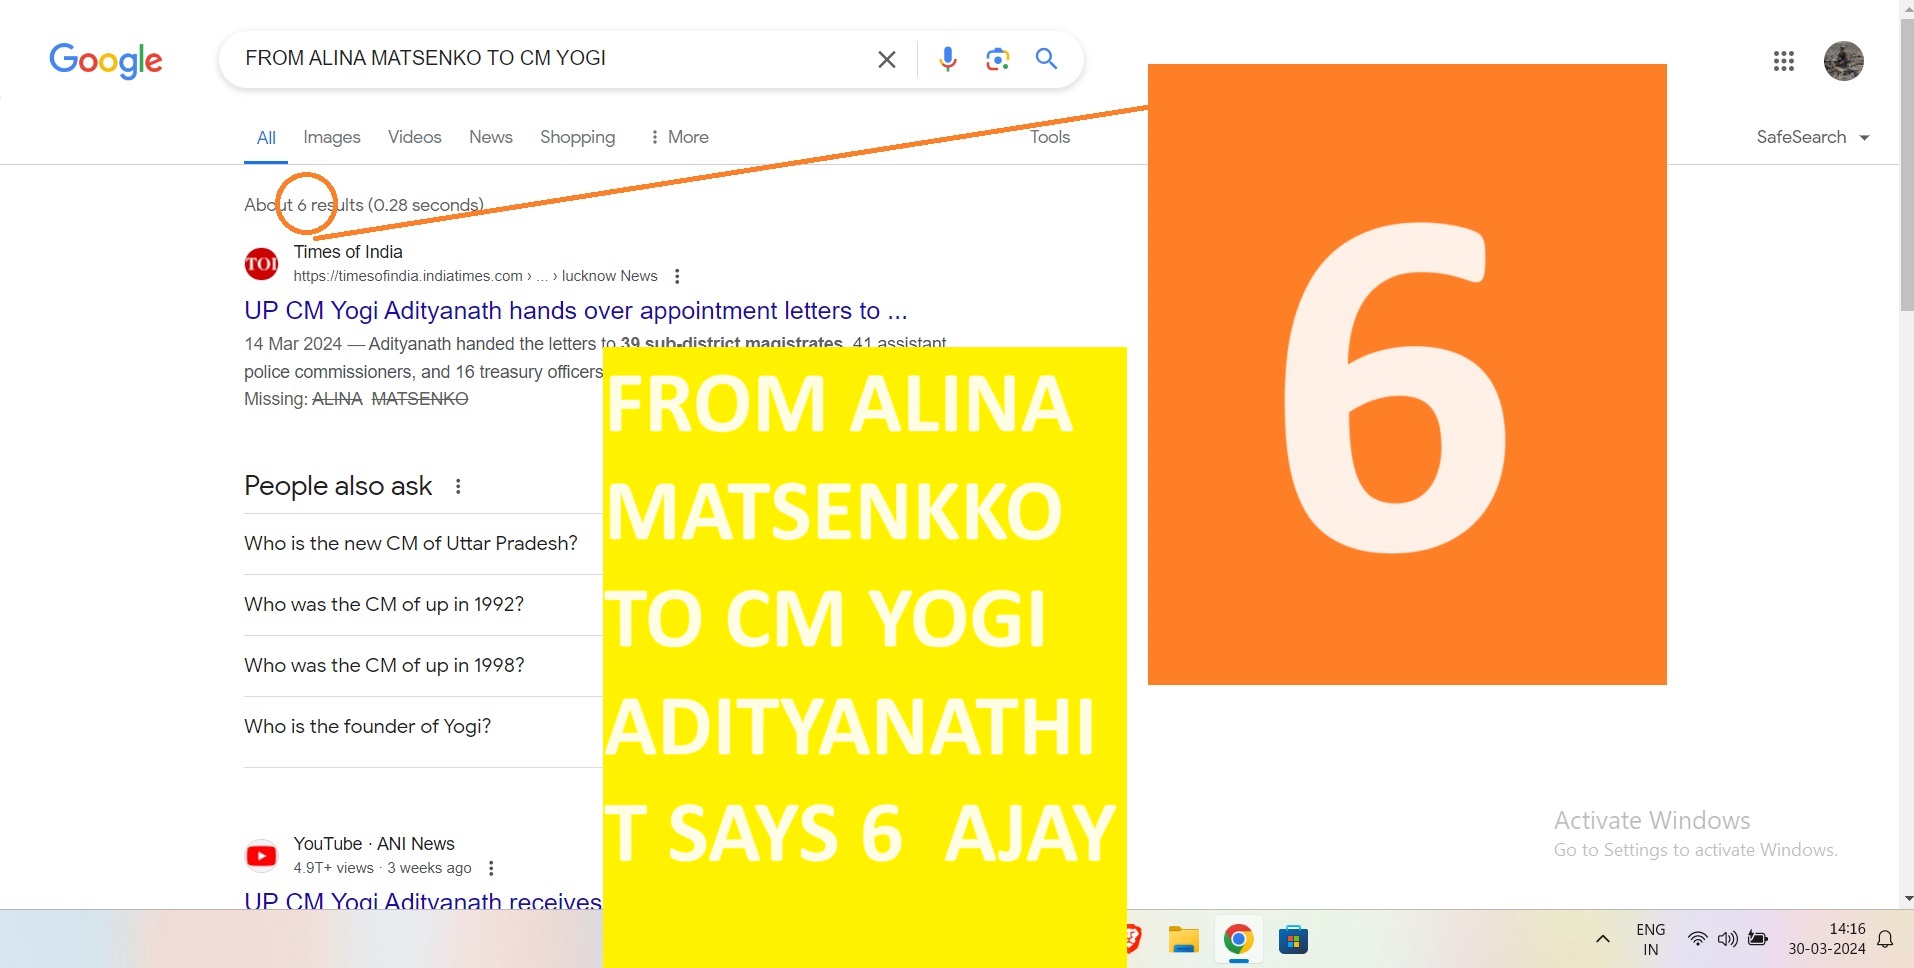 FROM ALINA MATSENKKO TO CM YOGI ADITYANATHIT SAYS 6 AJAY